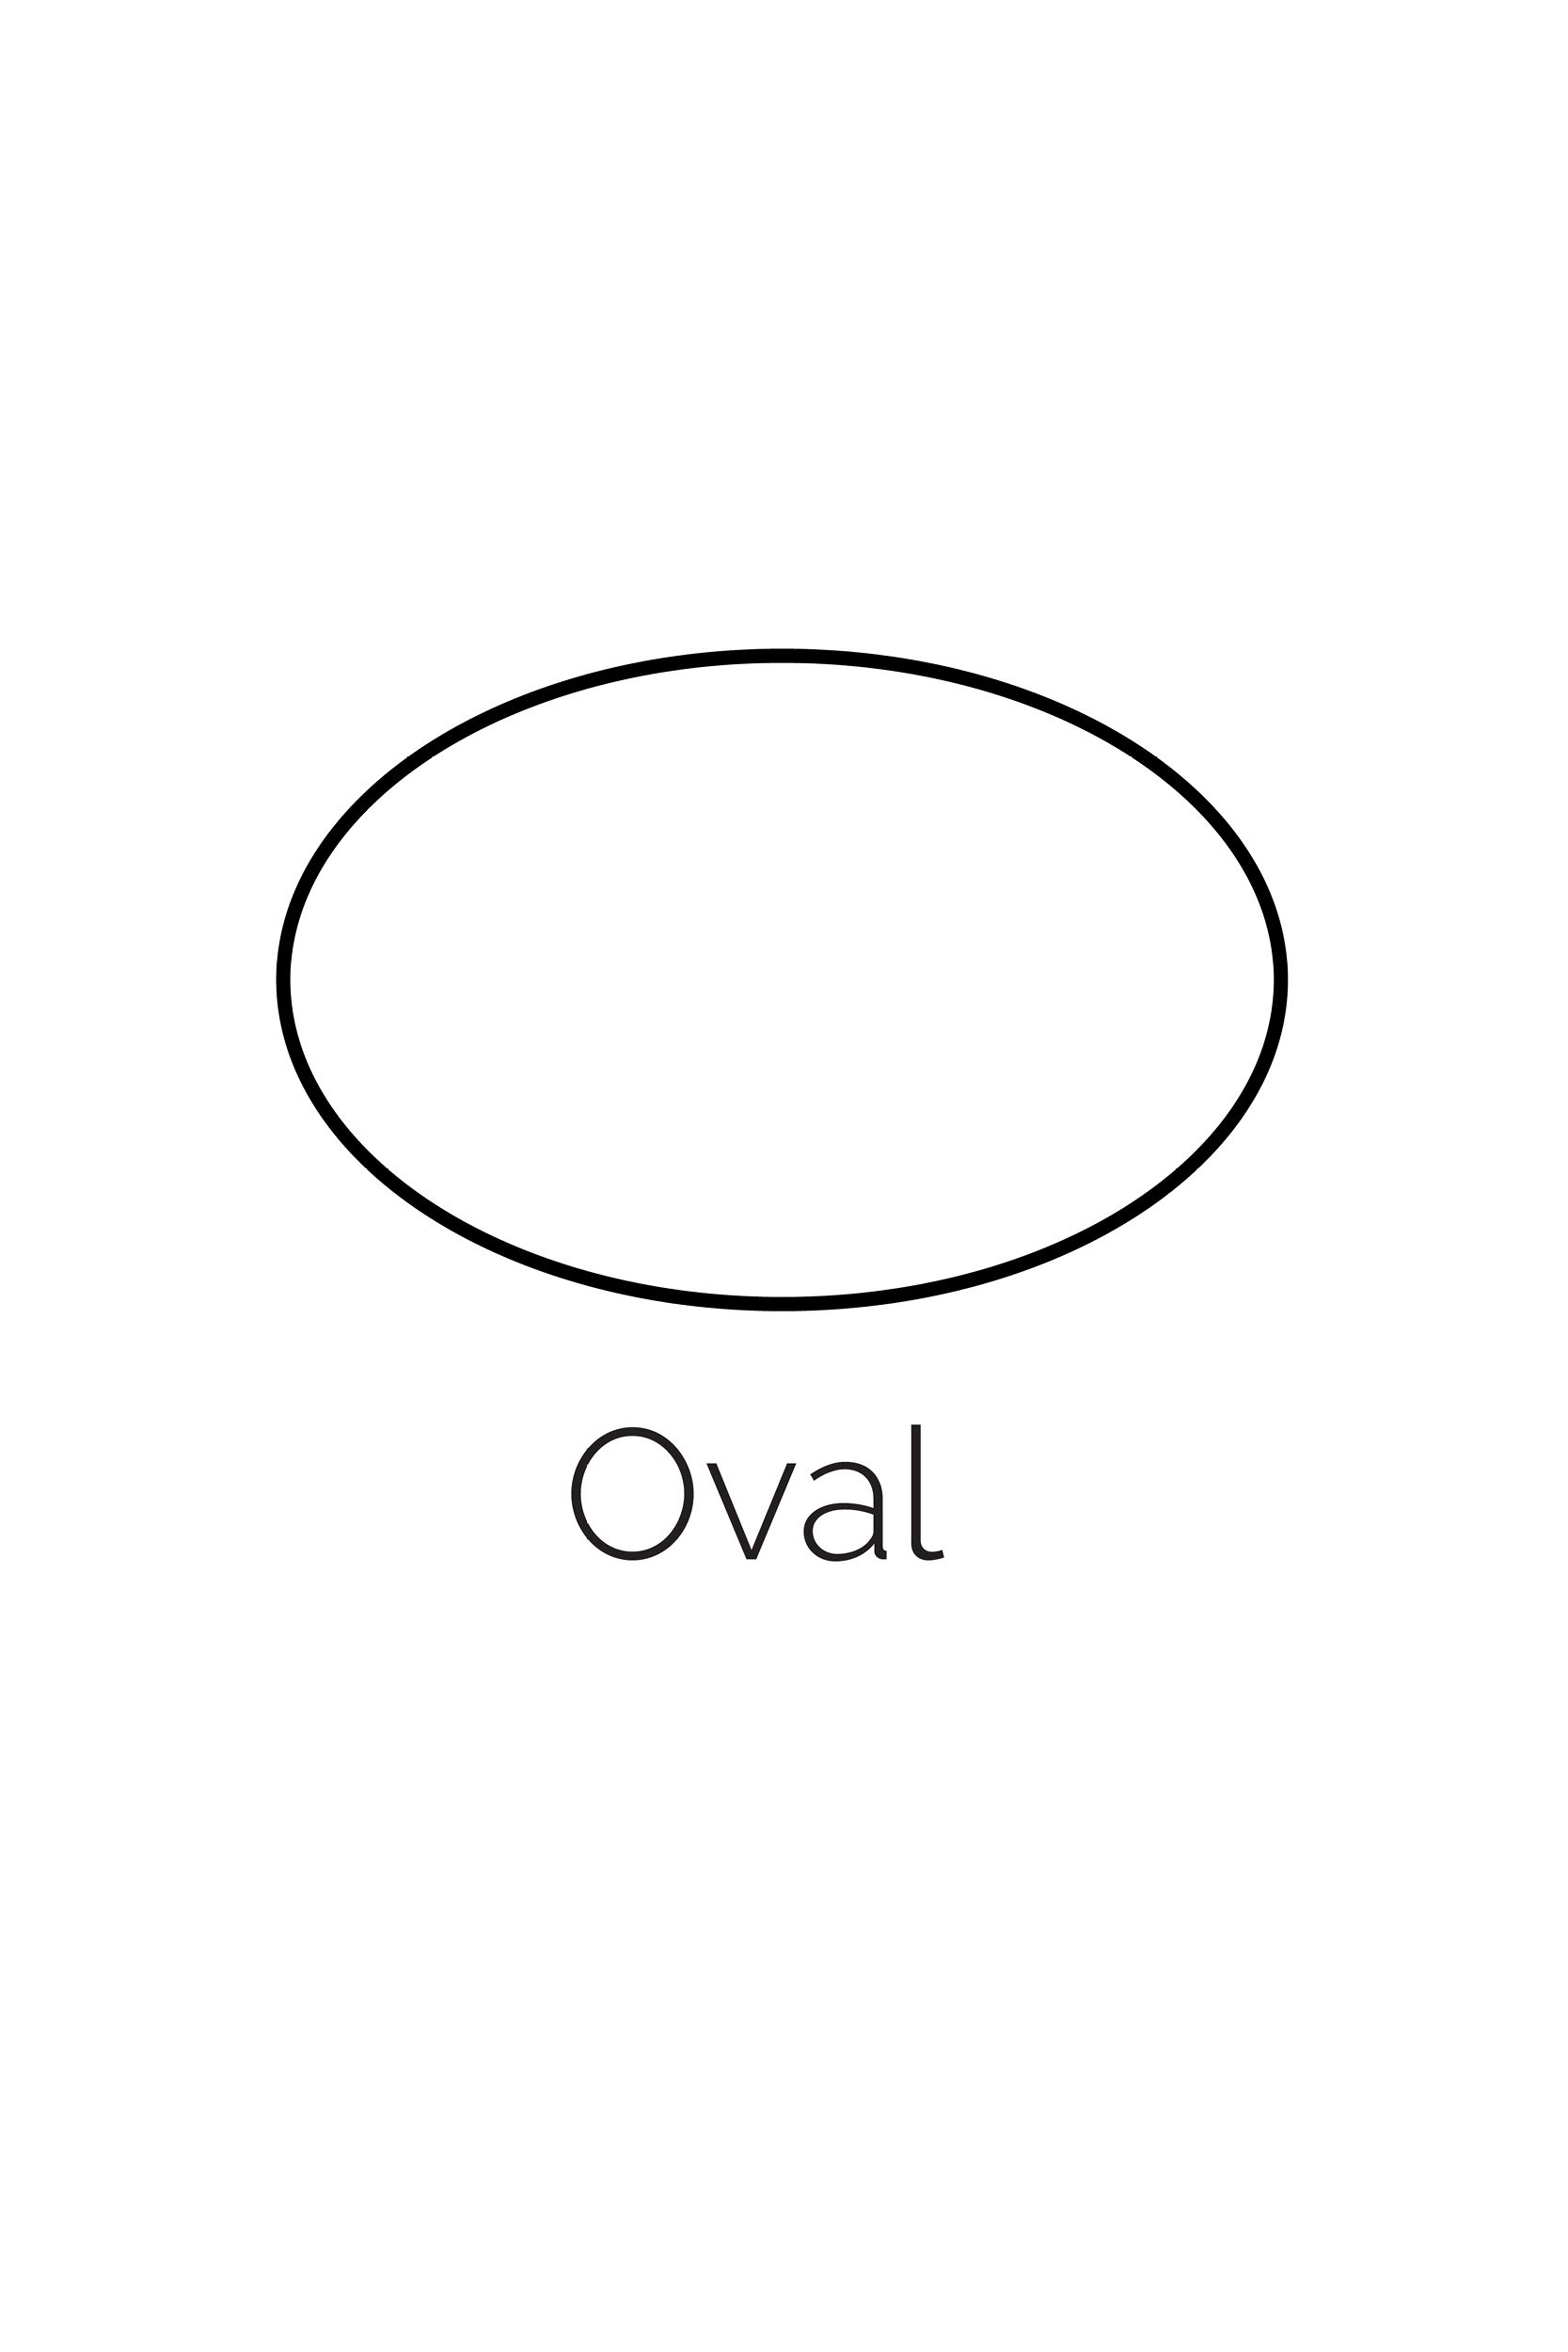 oval template printable